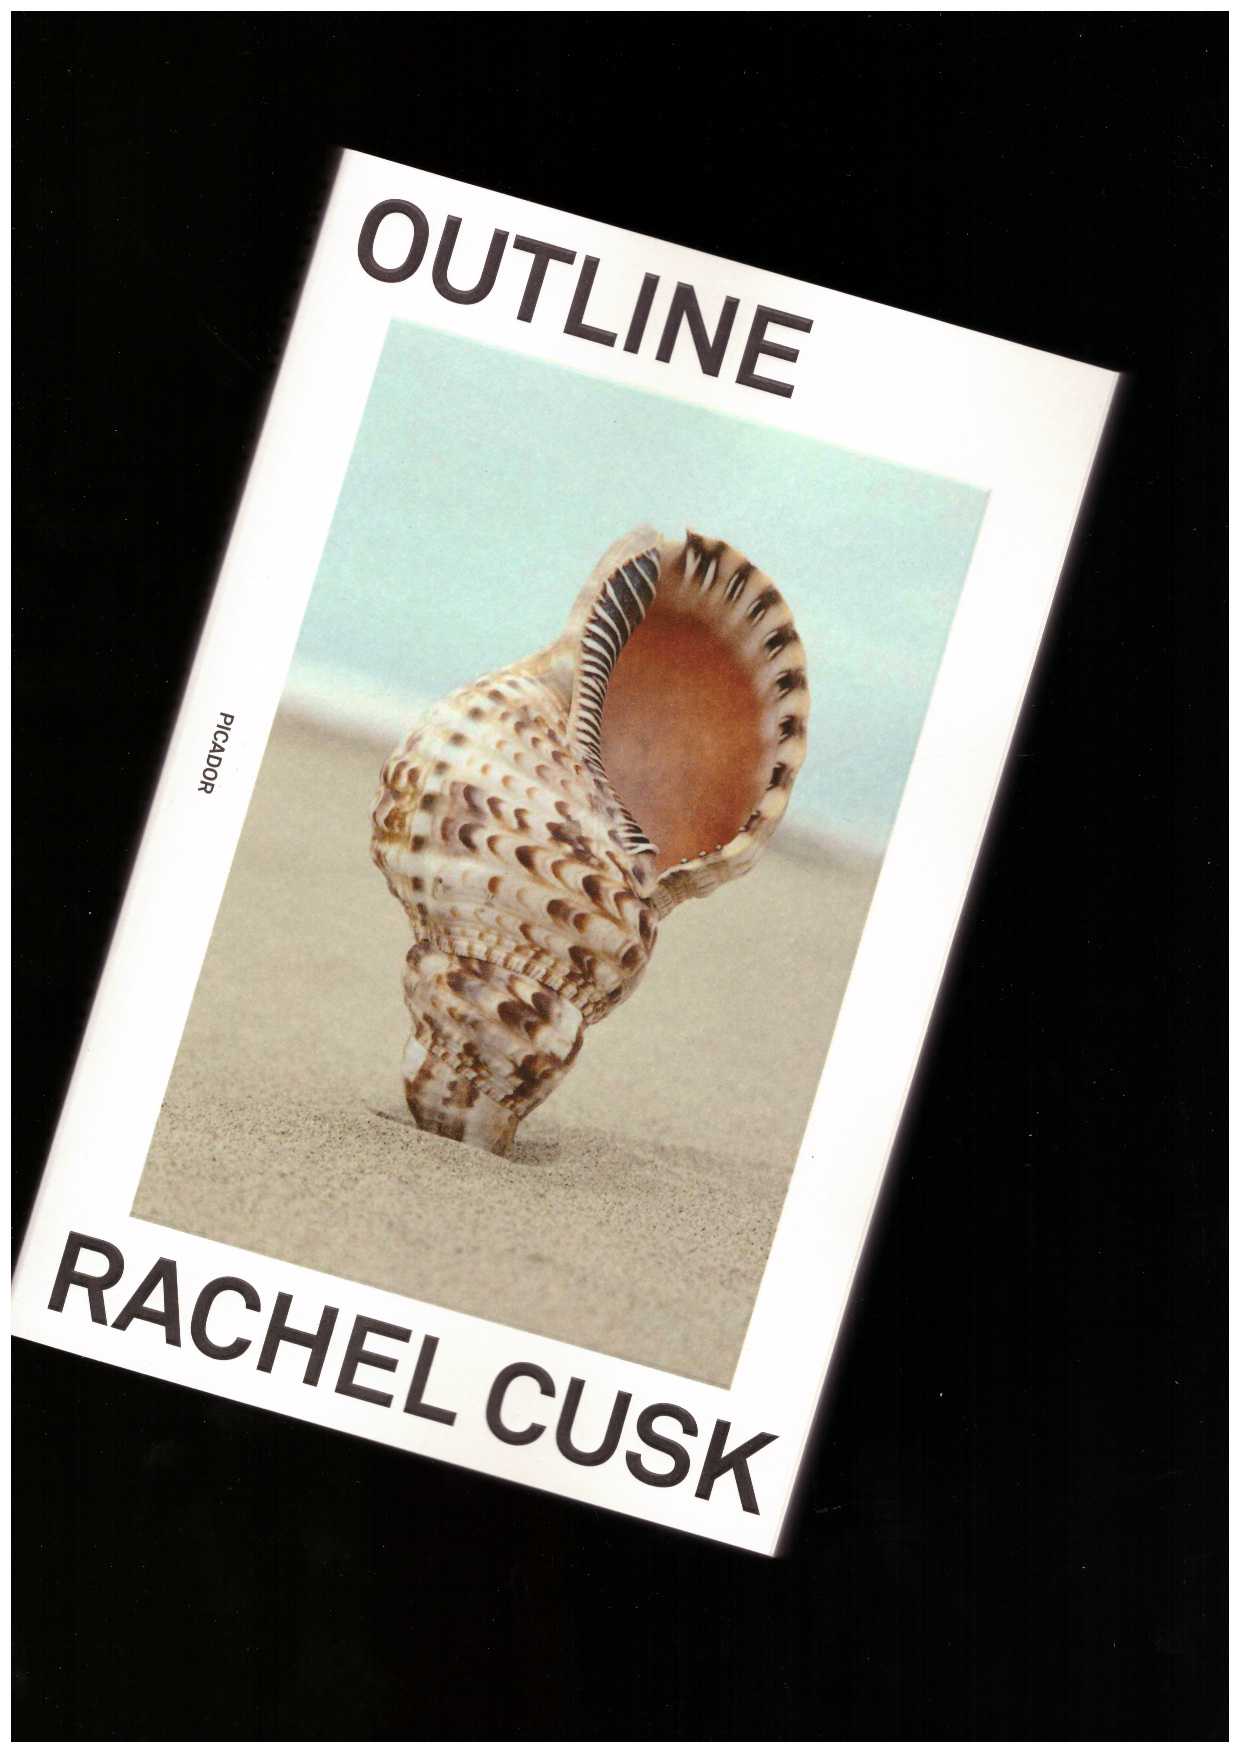 CUSK, Rachel - Outline